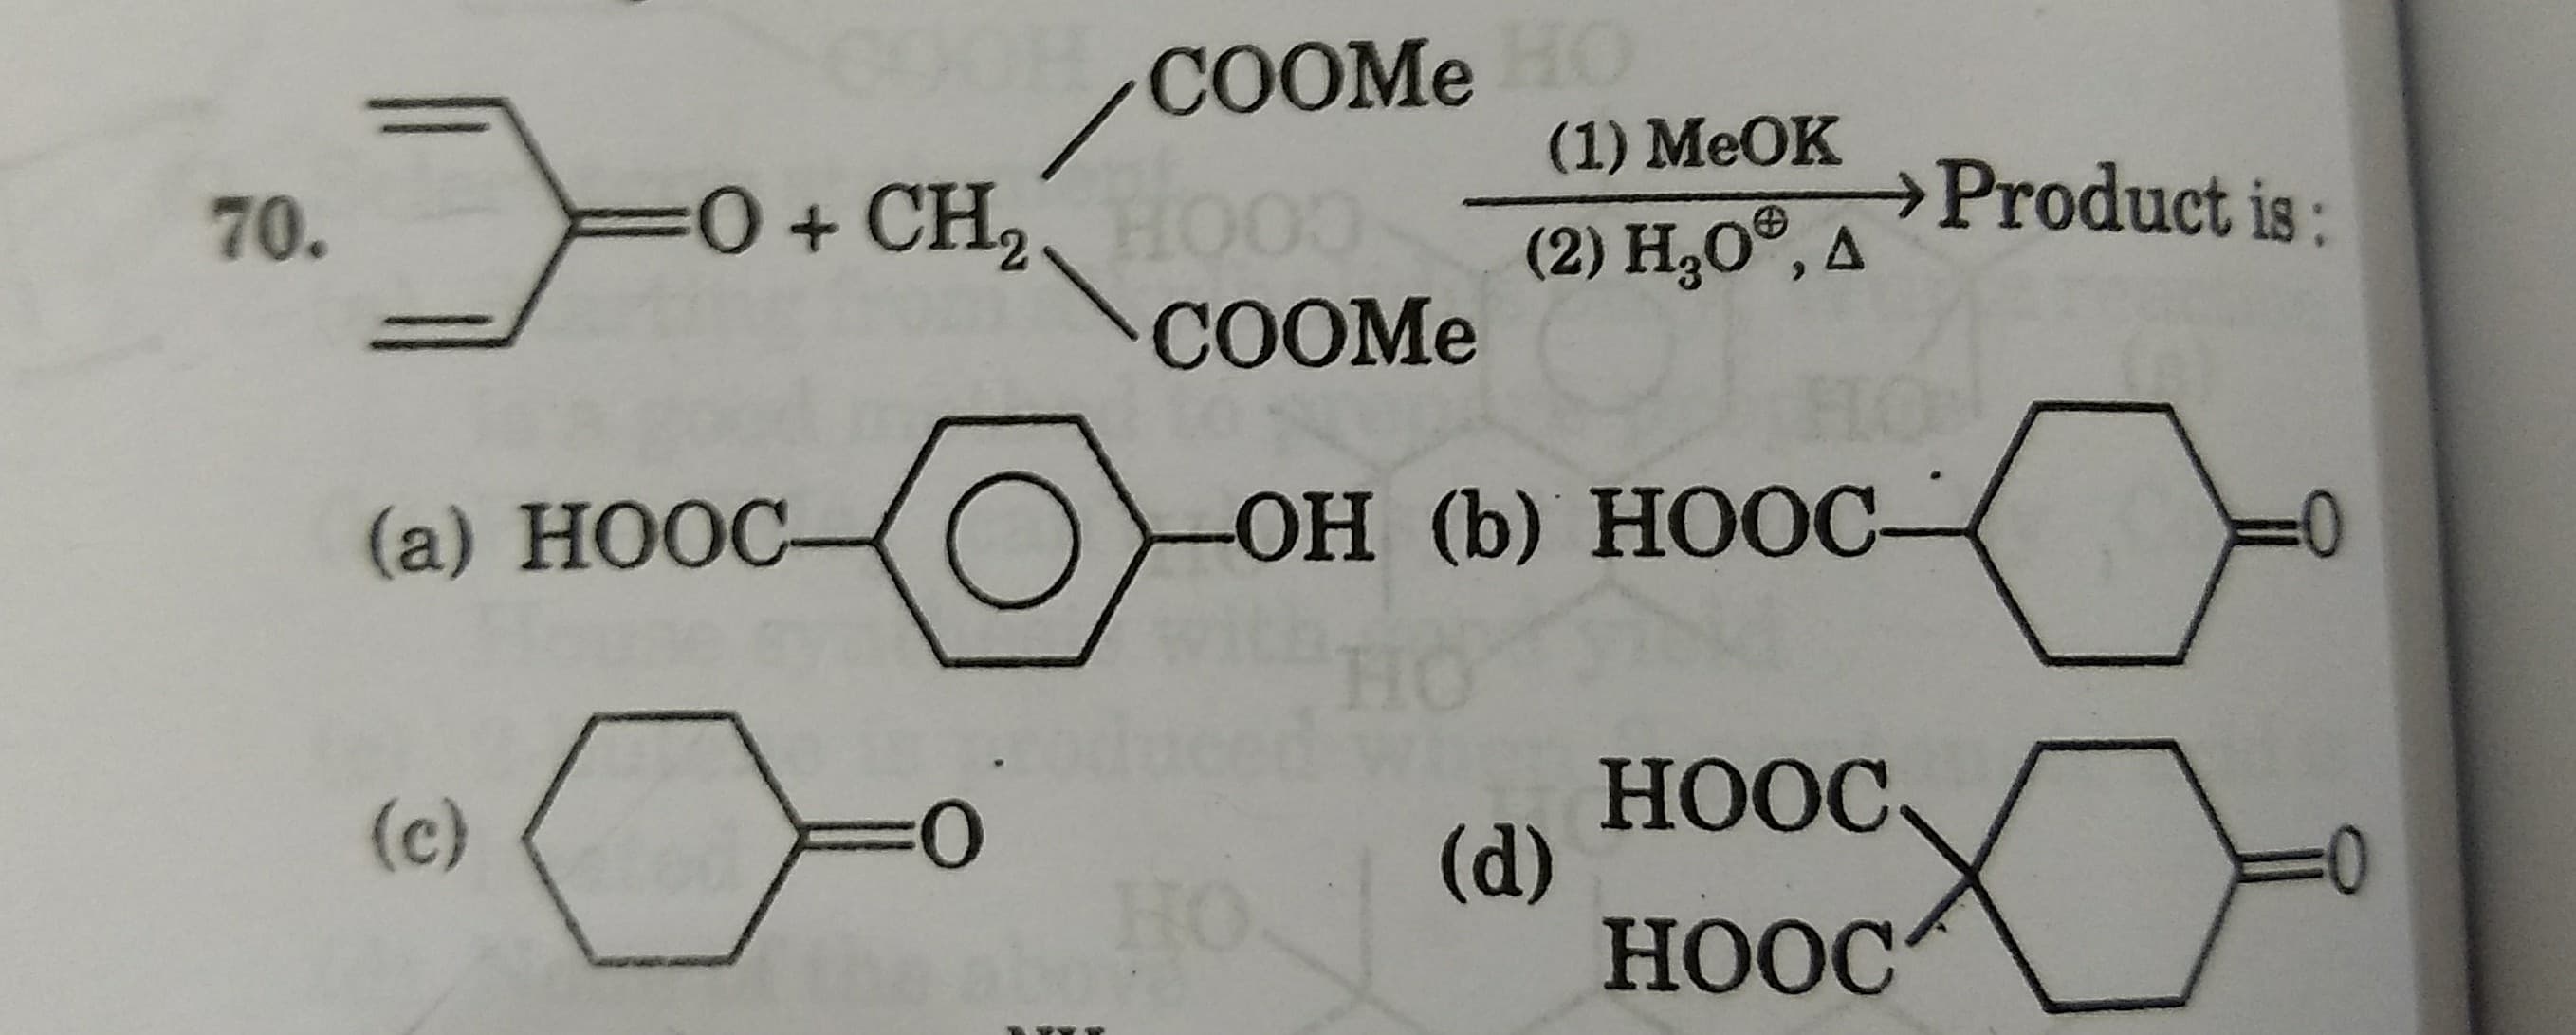 COOME
(1) MeOK
70.
0+ CH,
,HO00
(2) H,O®, a
→Product is:
COOME
(a) HOOC-
ОН (b) НООС-
HO
НОС
(d)
HOOC
(c)
0:
HO
